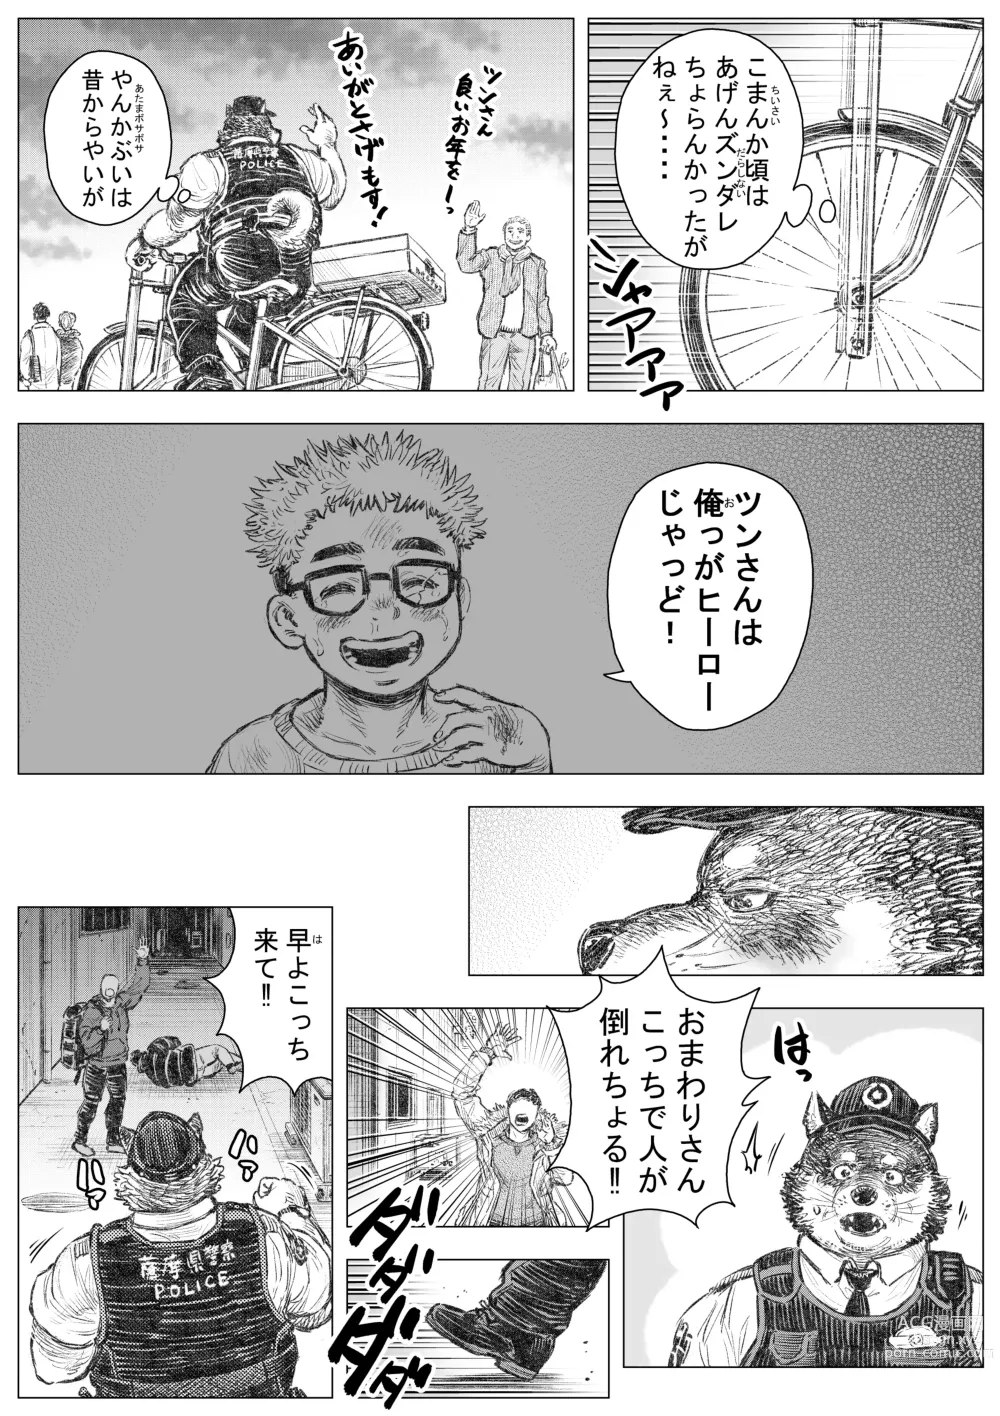 Page 4 of doujinshi Kenkei Tsun Junsa Buchou